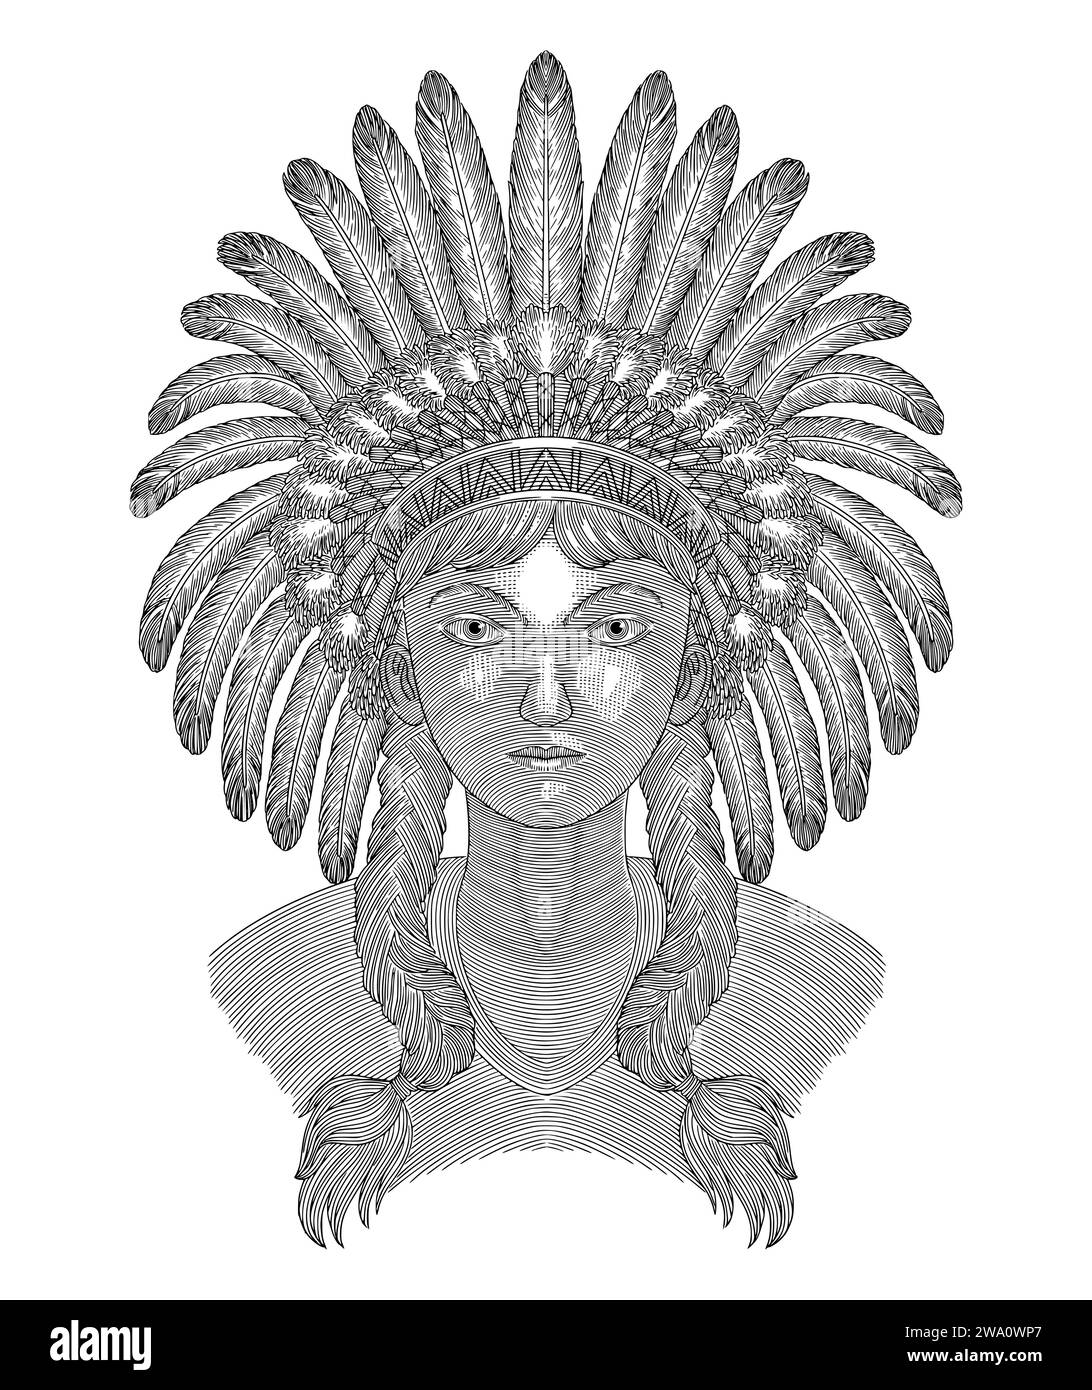 Fille avec coiffe traditionnelle indienne, femme amérindienne. Style de dessin engravig vintage Illustration de Vecteur